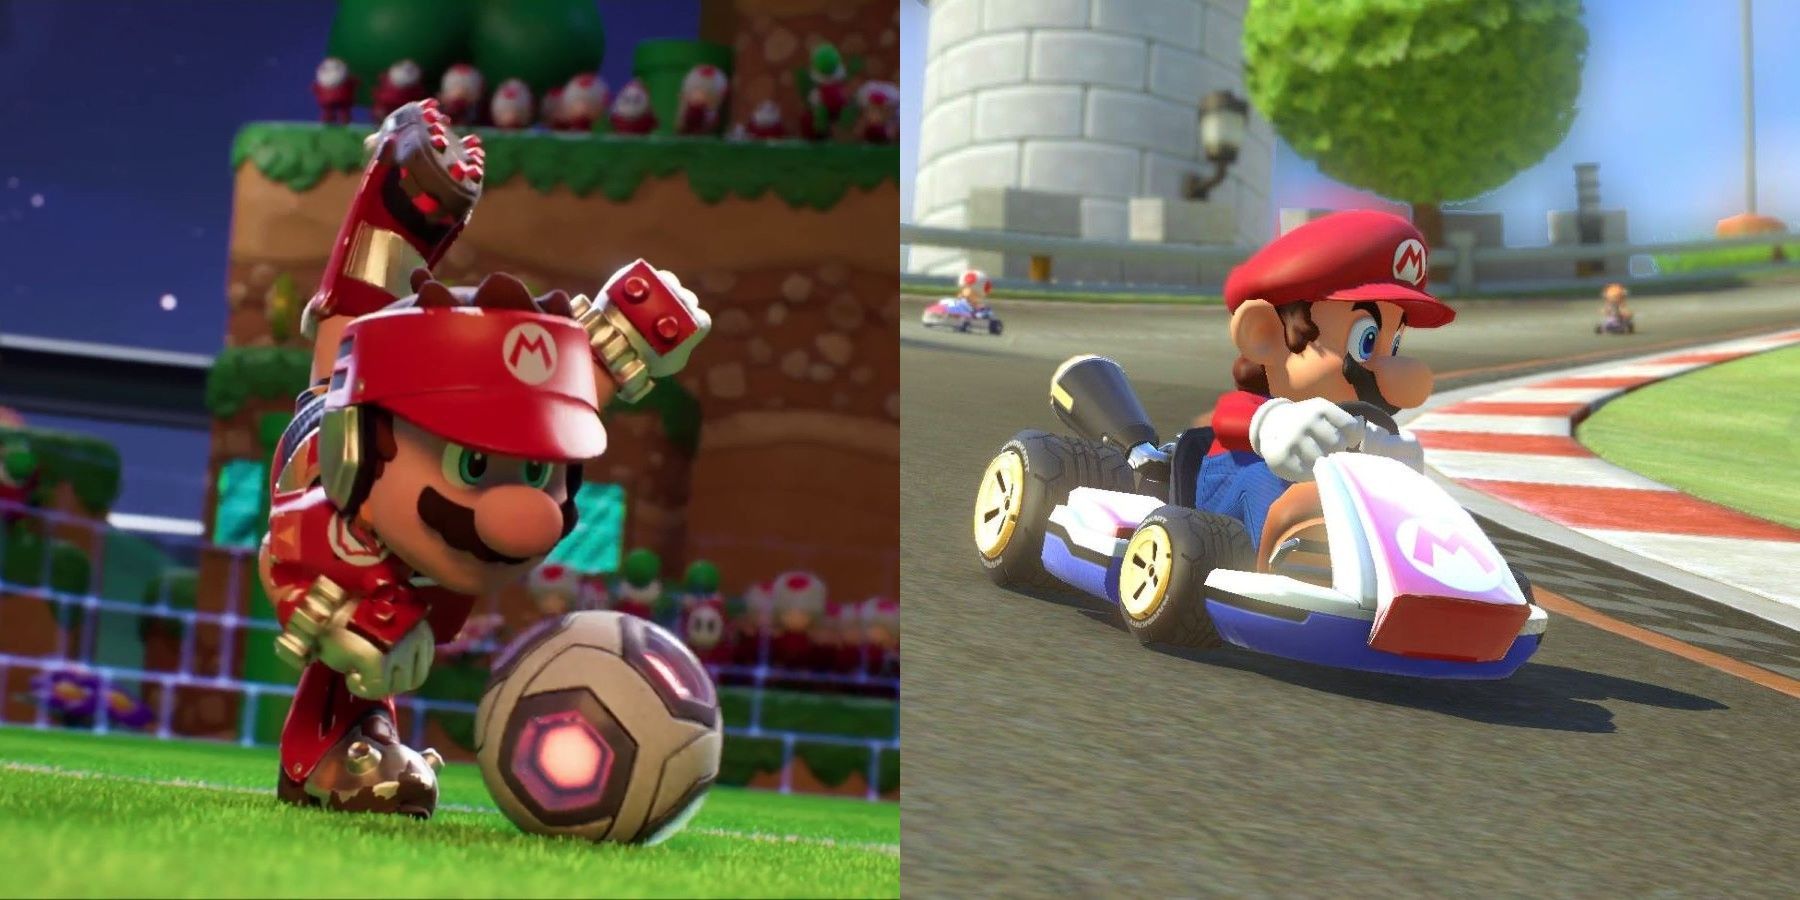 Mario in Mario Strikers: Battle League and Mario Kart 8